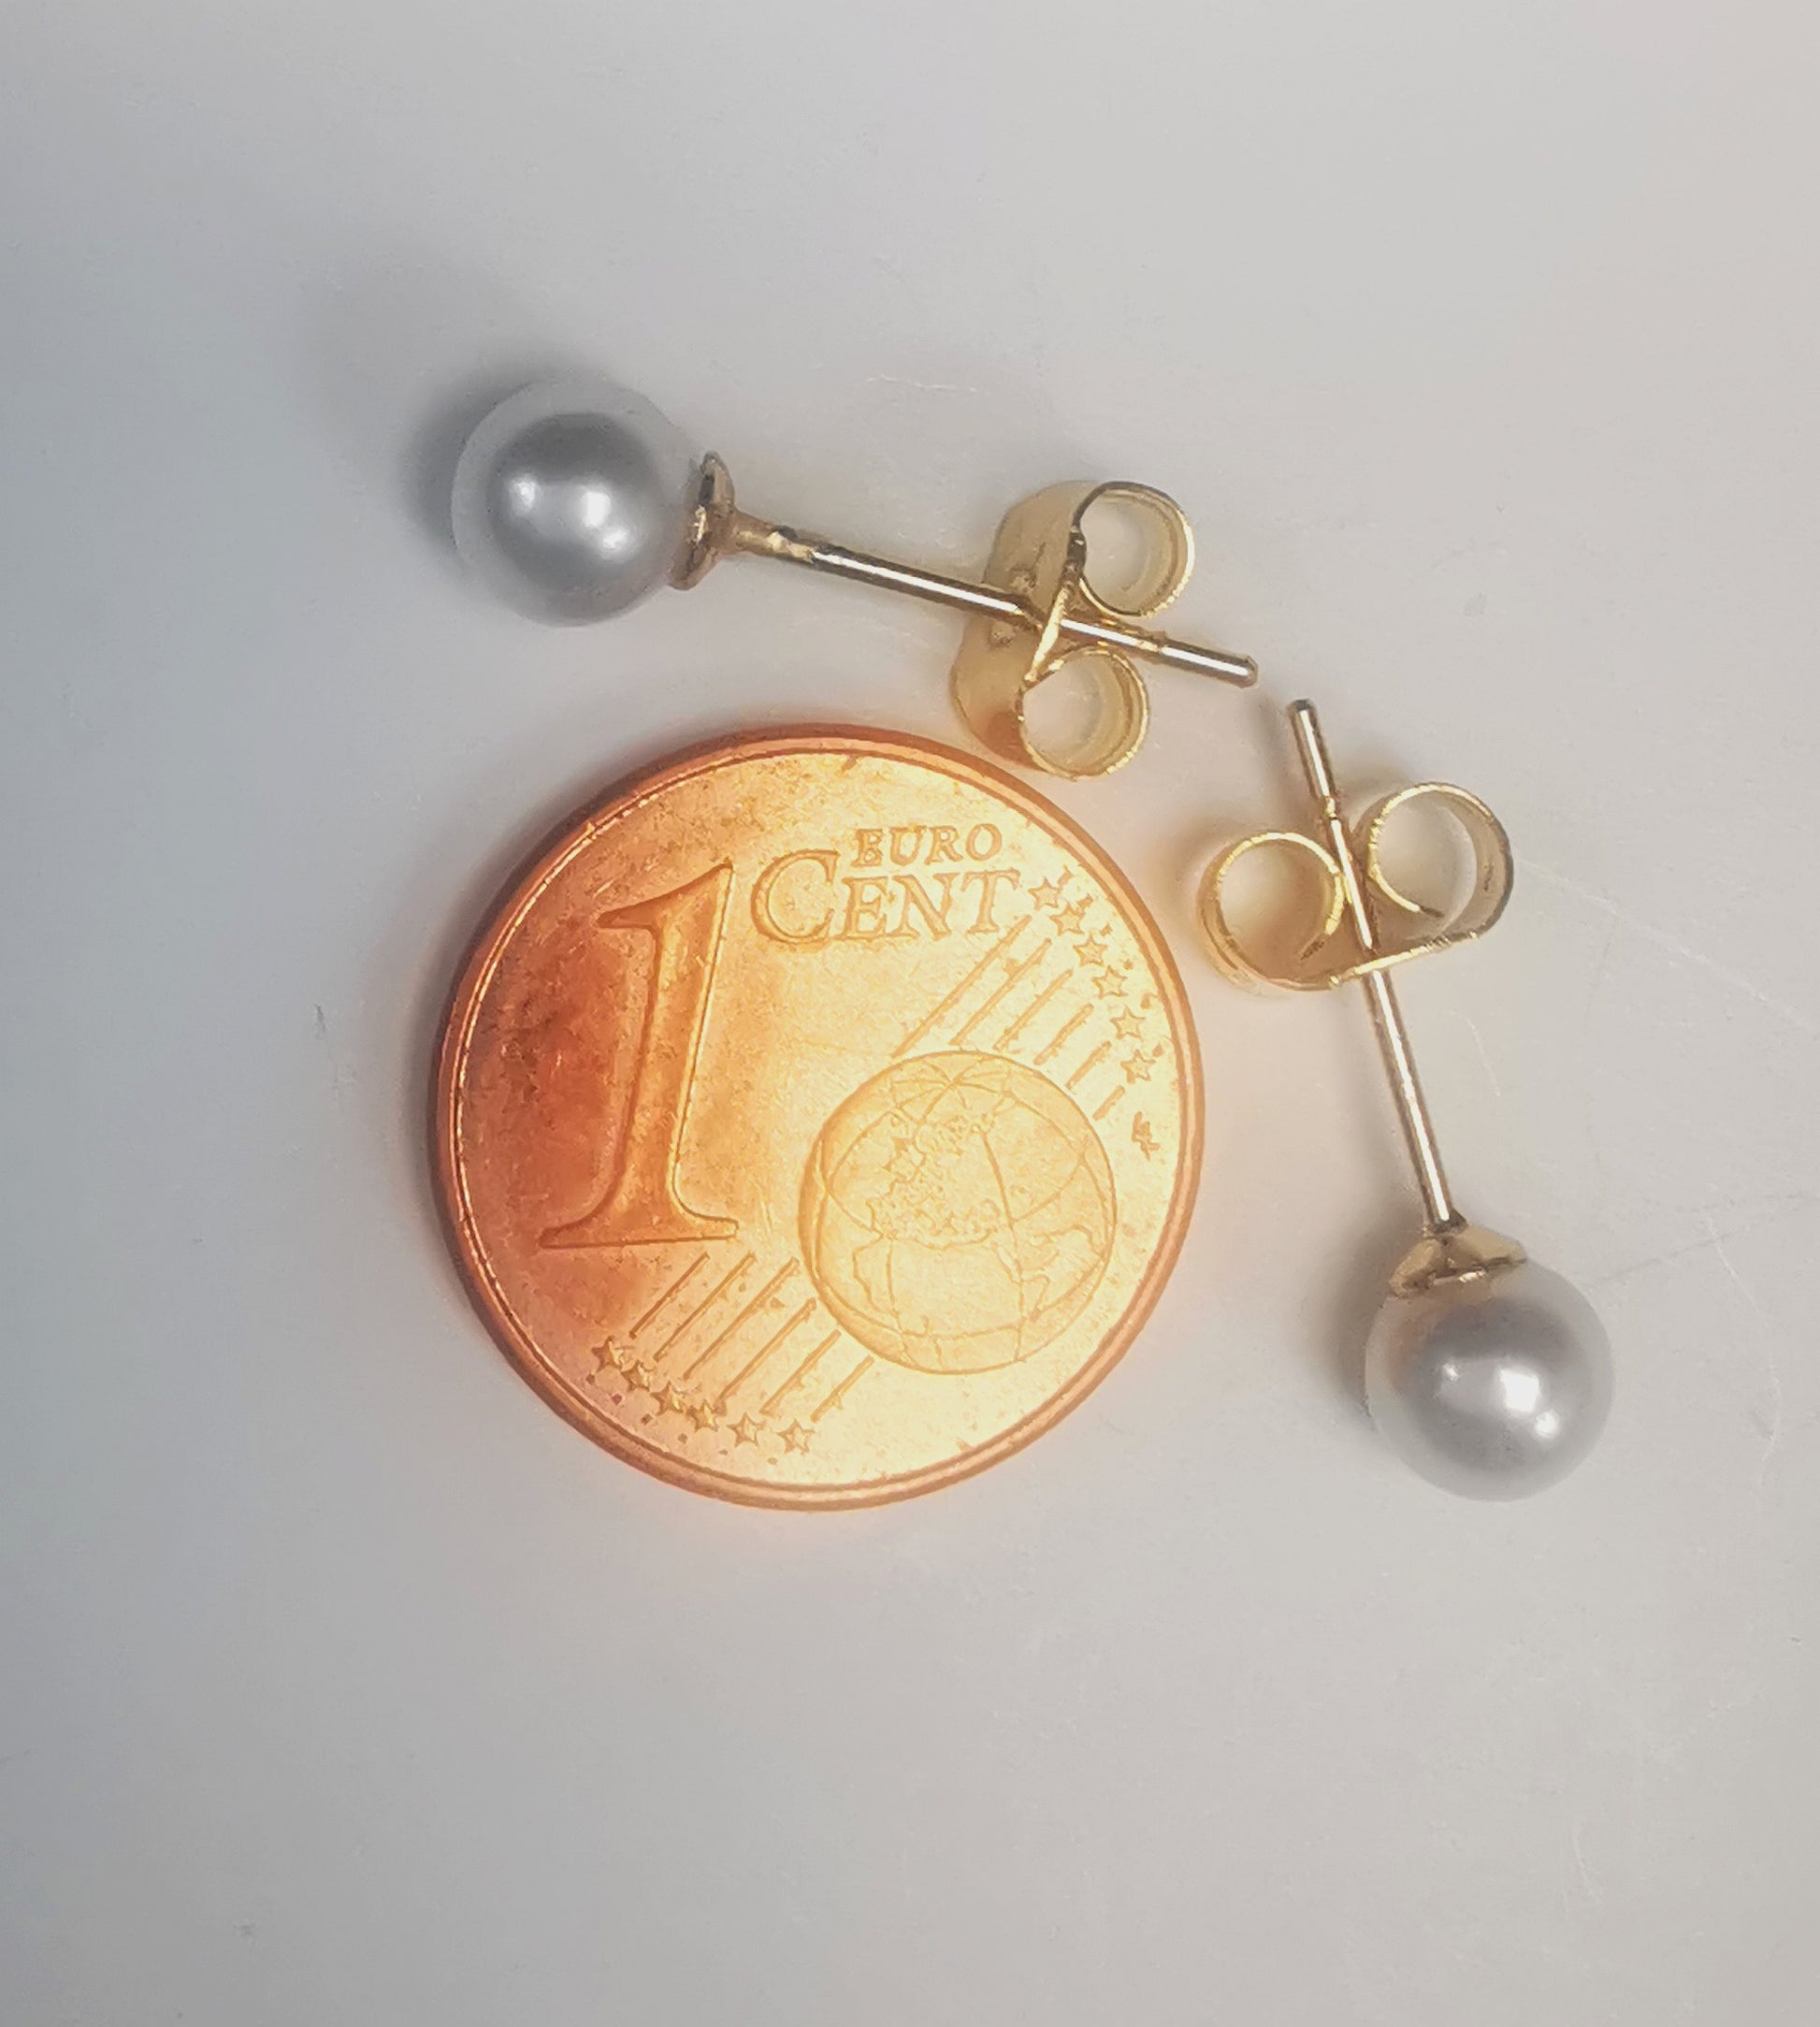 Boucles d'oreilles perles de culture blanches rondes 5mm montées sur clous plaqués or. Présentées perpendiculairement, celle du haut horizontale perle à gauche, celle du bas verticale perle en bas, au dessus d'une pièce de 1 centime, sur fond blanc. Vue de dessus.